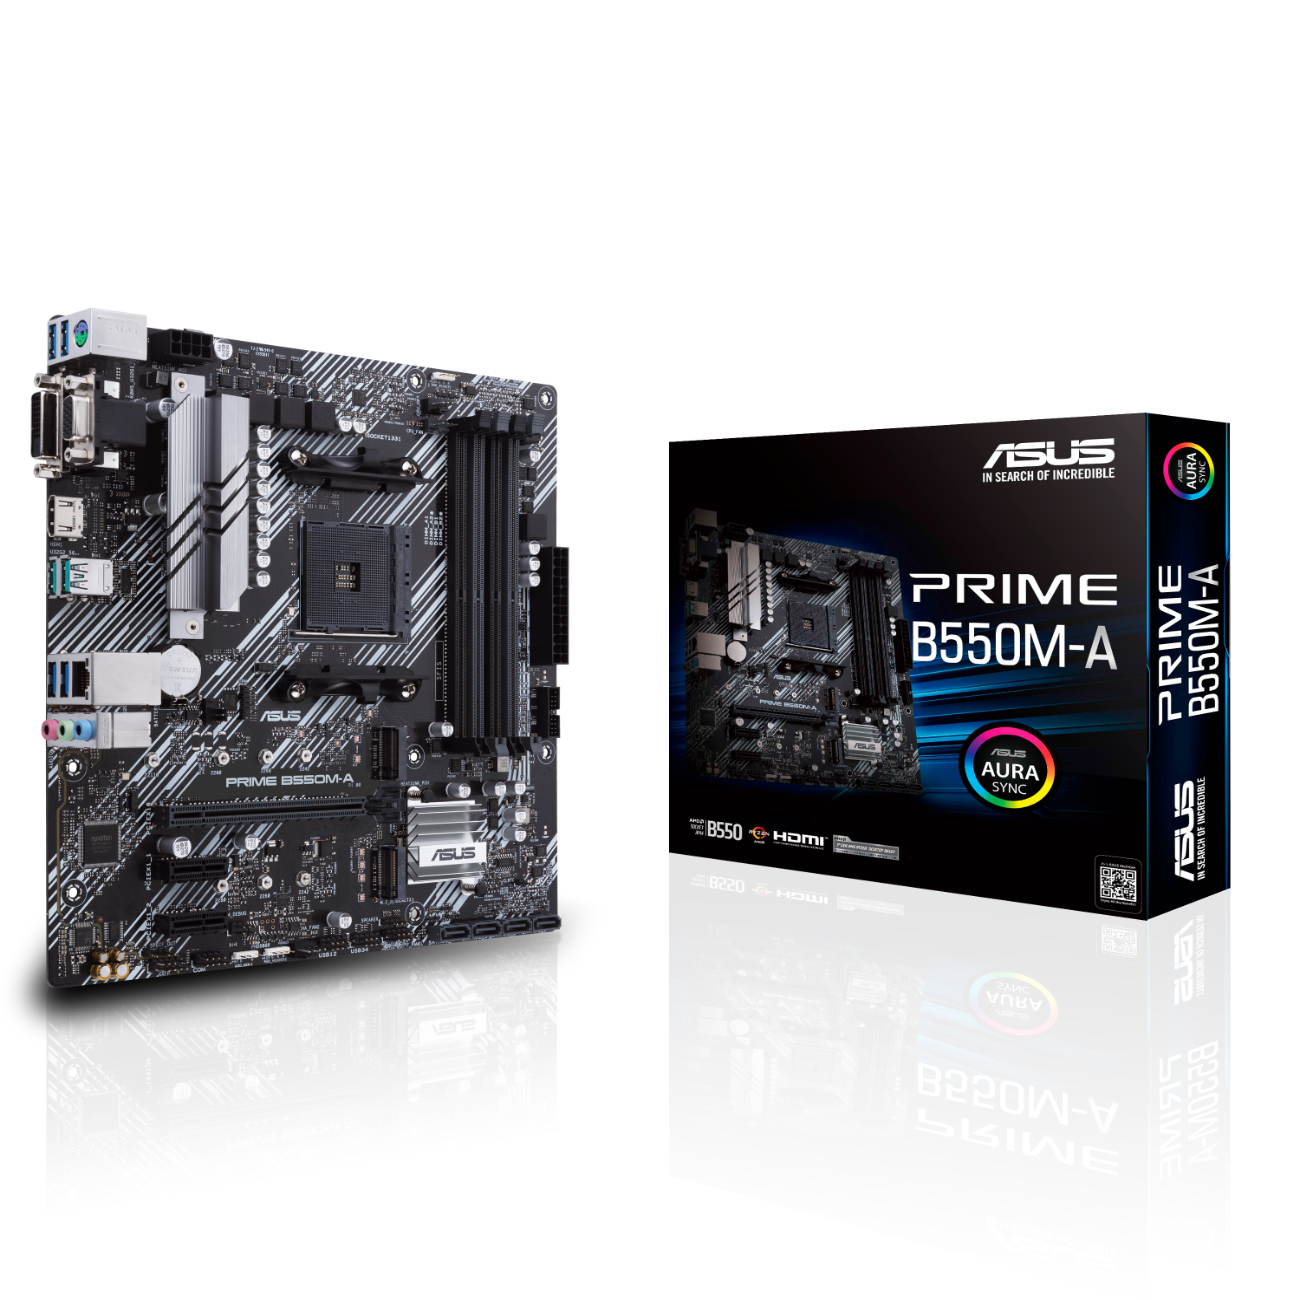 MB ASUS PRIME B550M-A (AMD,AM4,DDR4,mATX) - 90MB14I0-M0EAY0